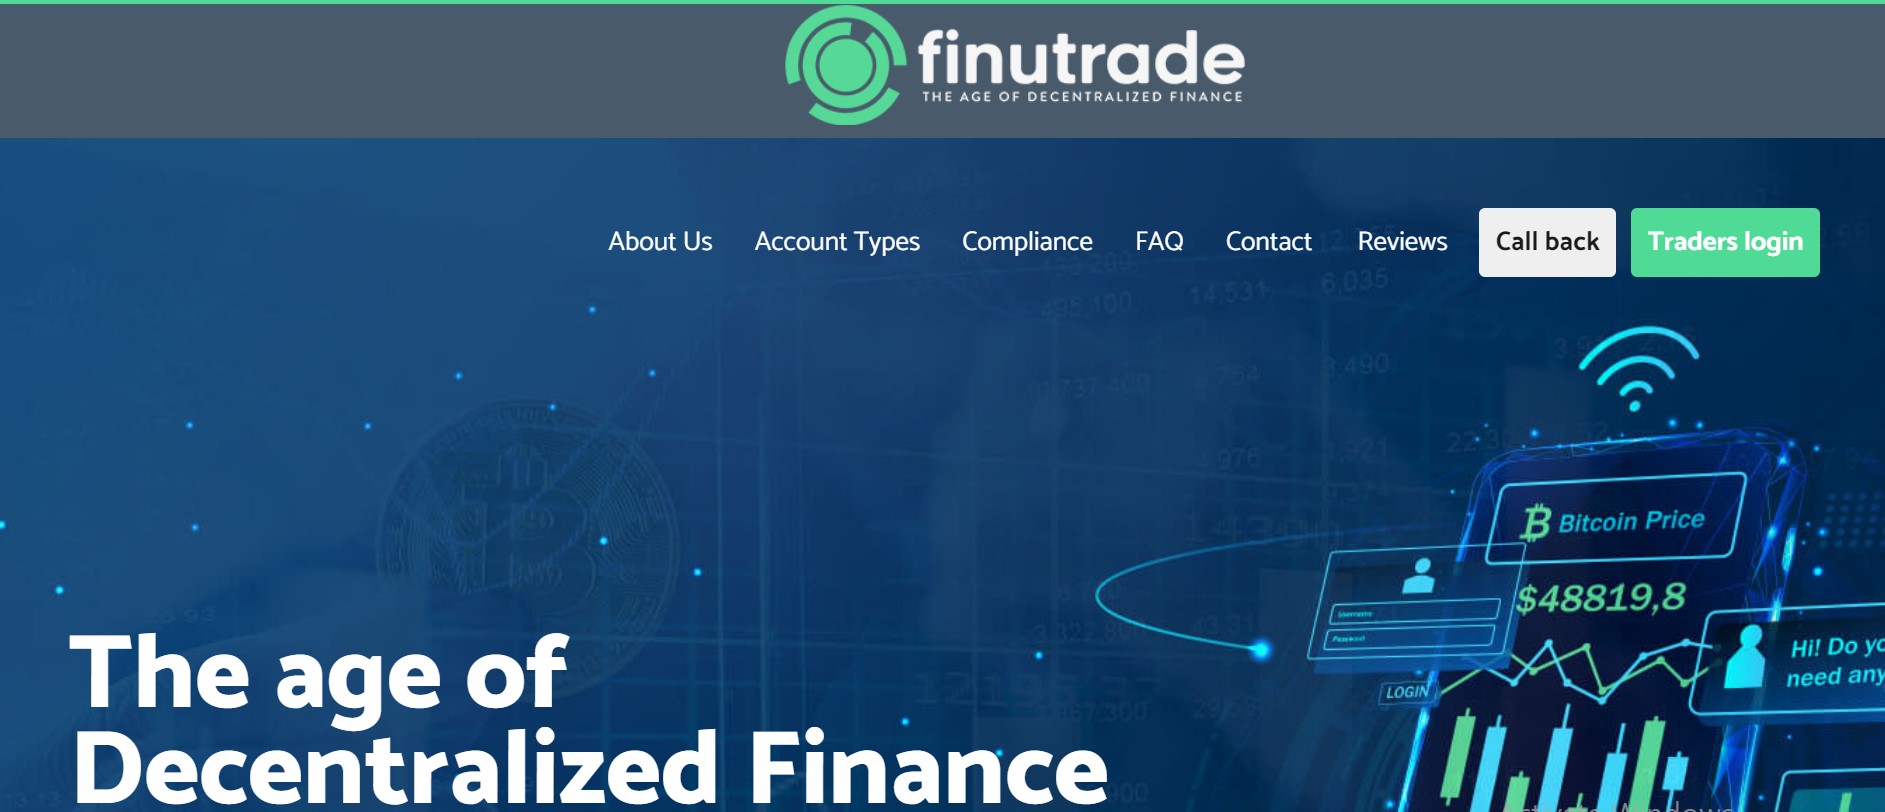 FinuTrade website